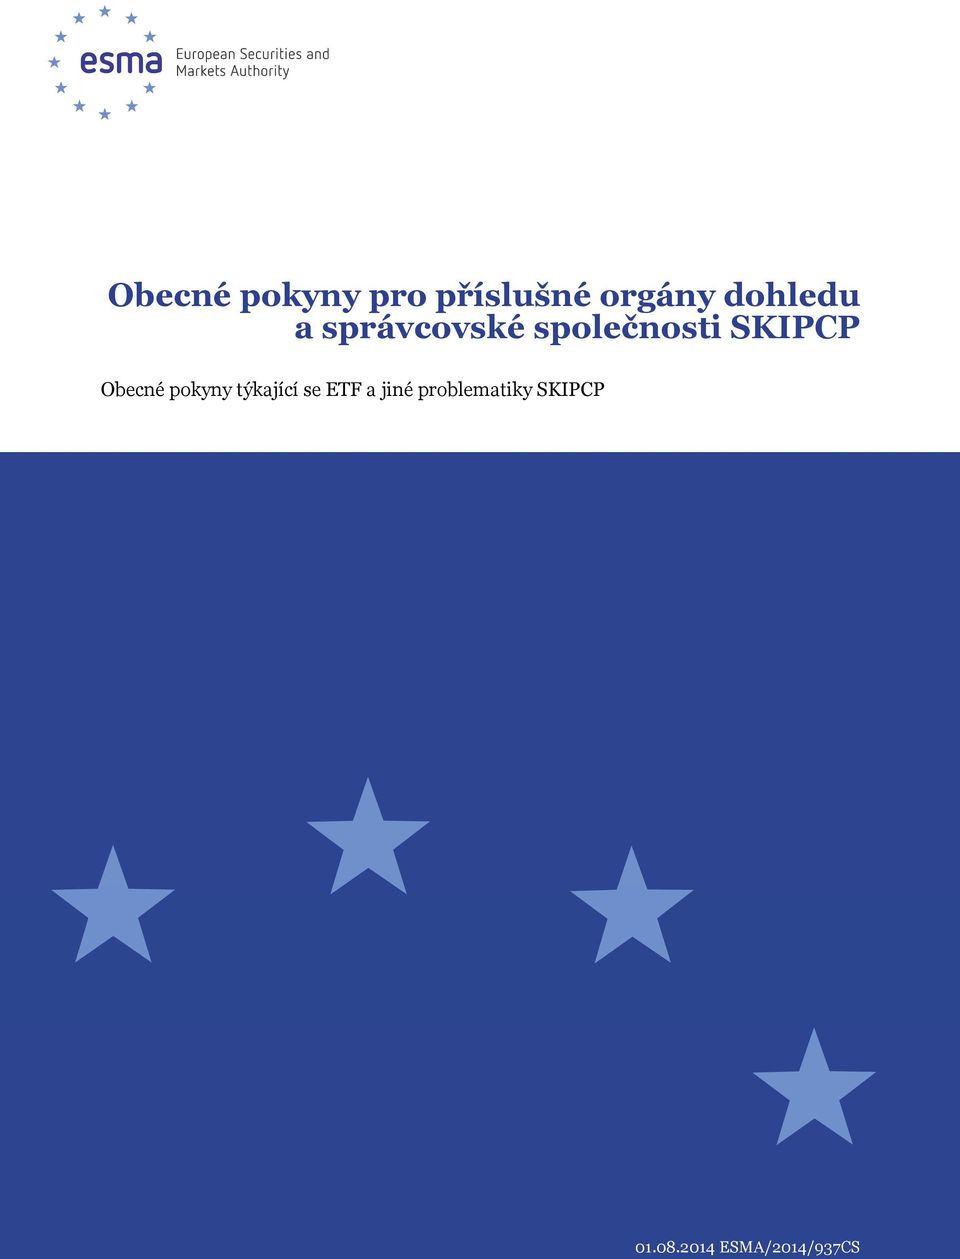 SKIPCP Obecné pokyny týkající se ETF a